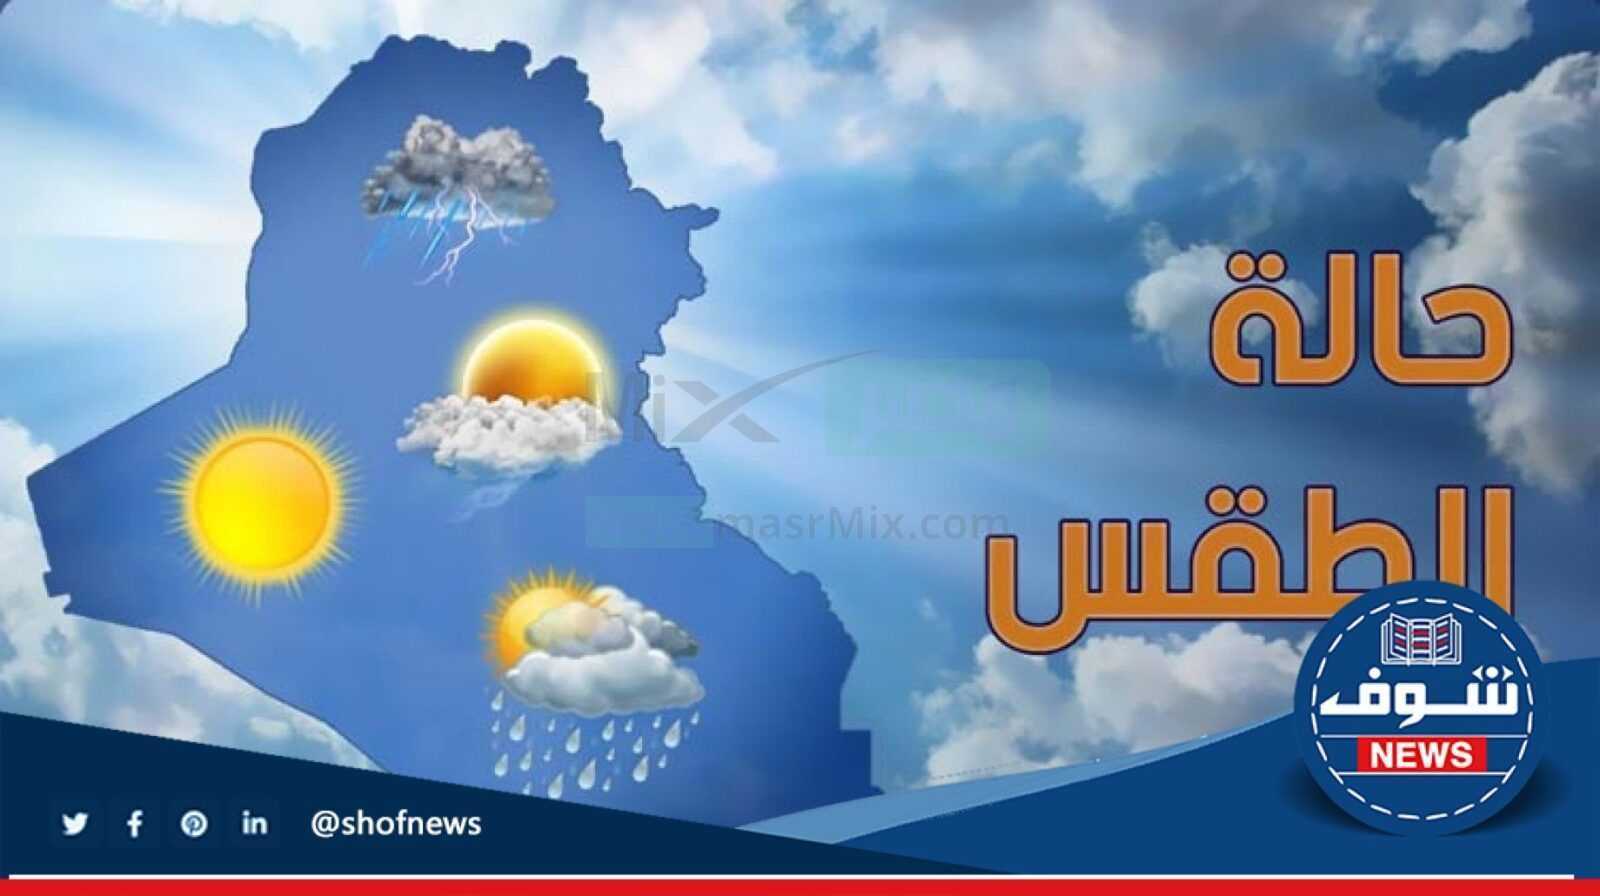 "حالة الطقس" درجات الحرارة المتوقعة غدا ولمدة 6 أيام القادمة في مصر يناير 2023